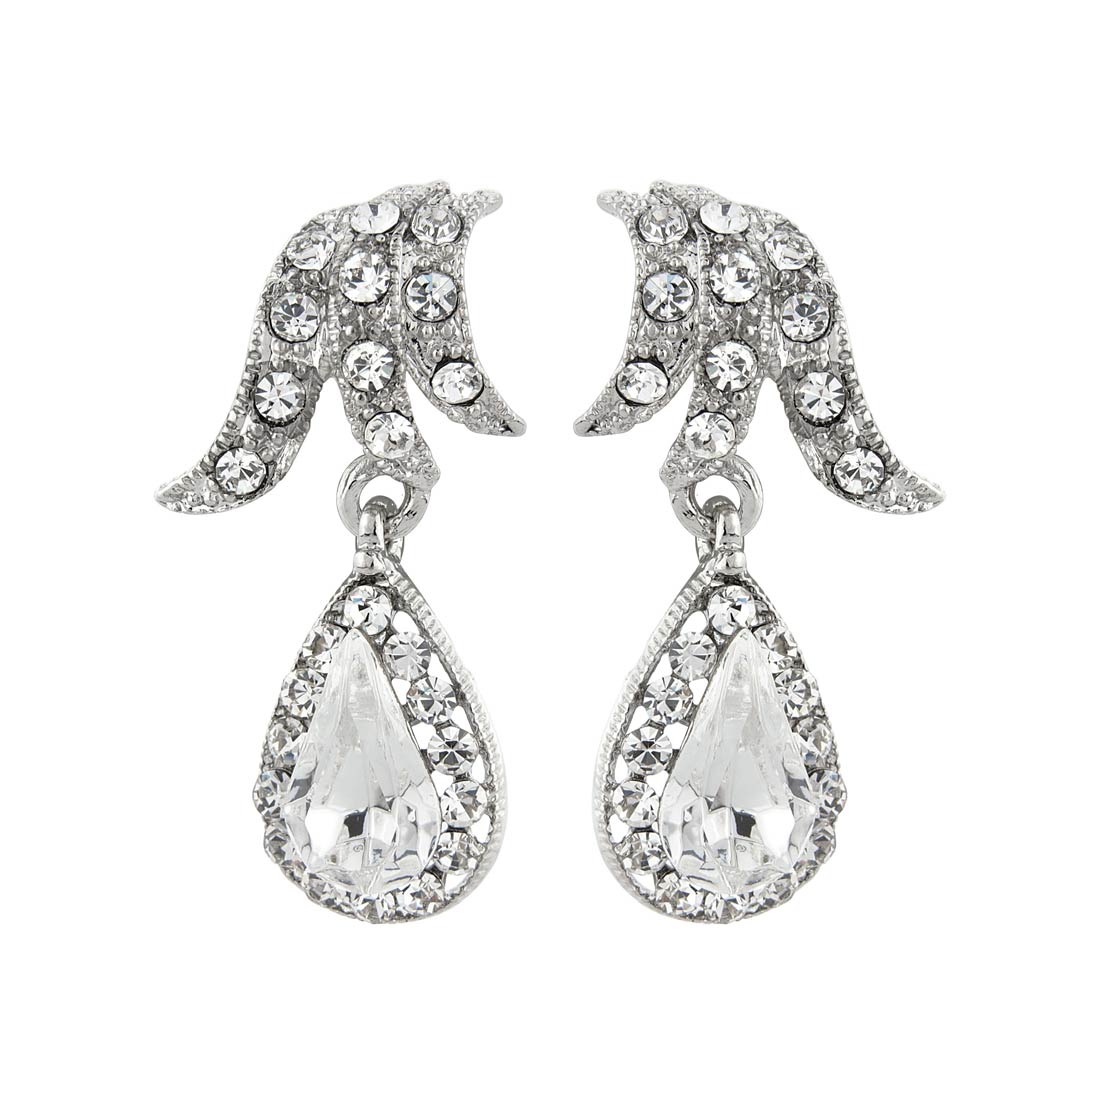 Graceful Starlet Tear Drop Crystal Bridal Earrings